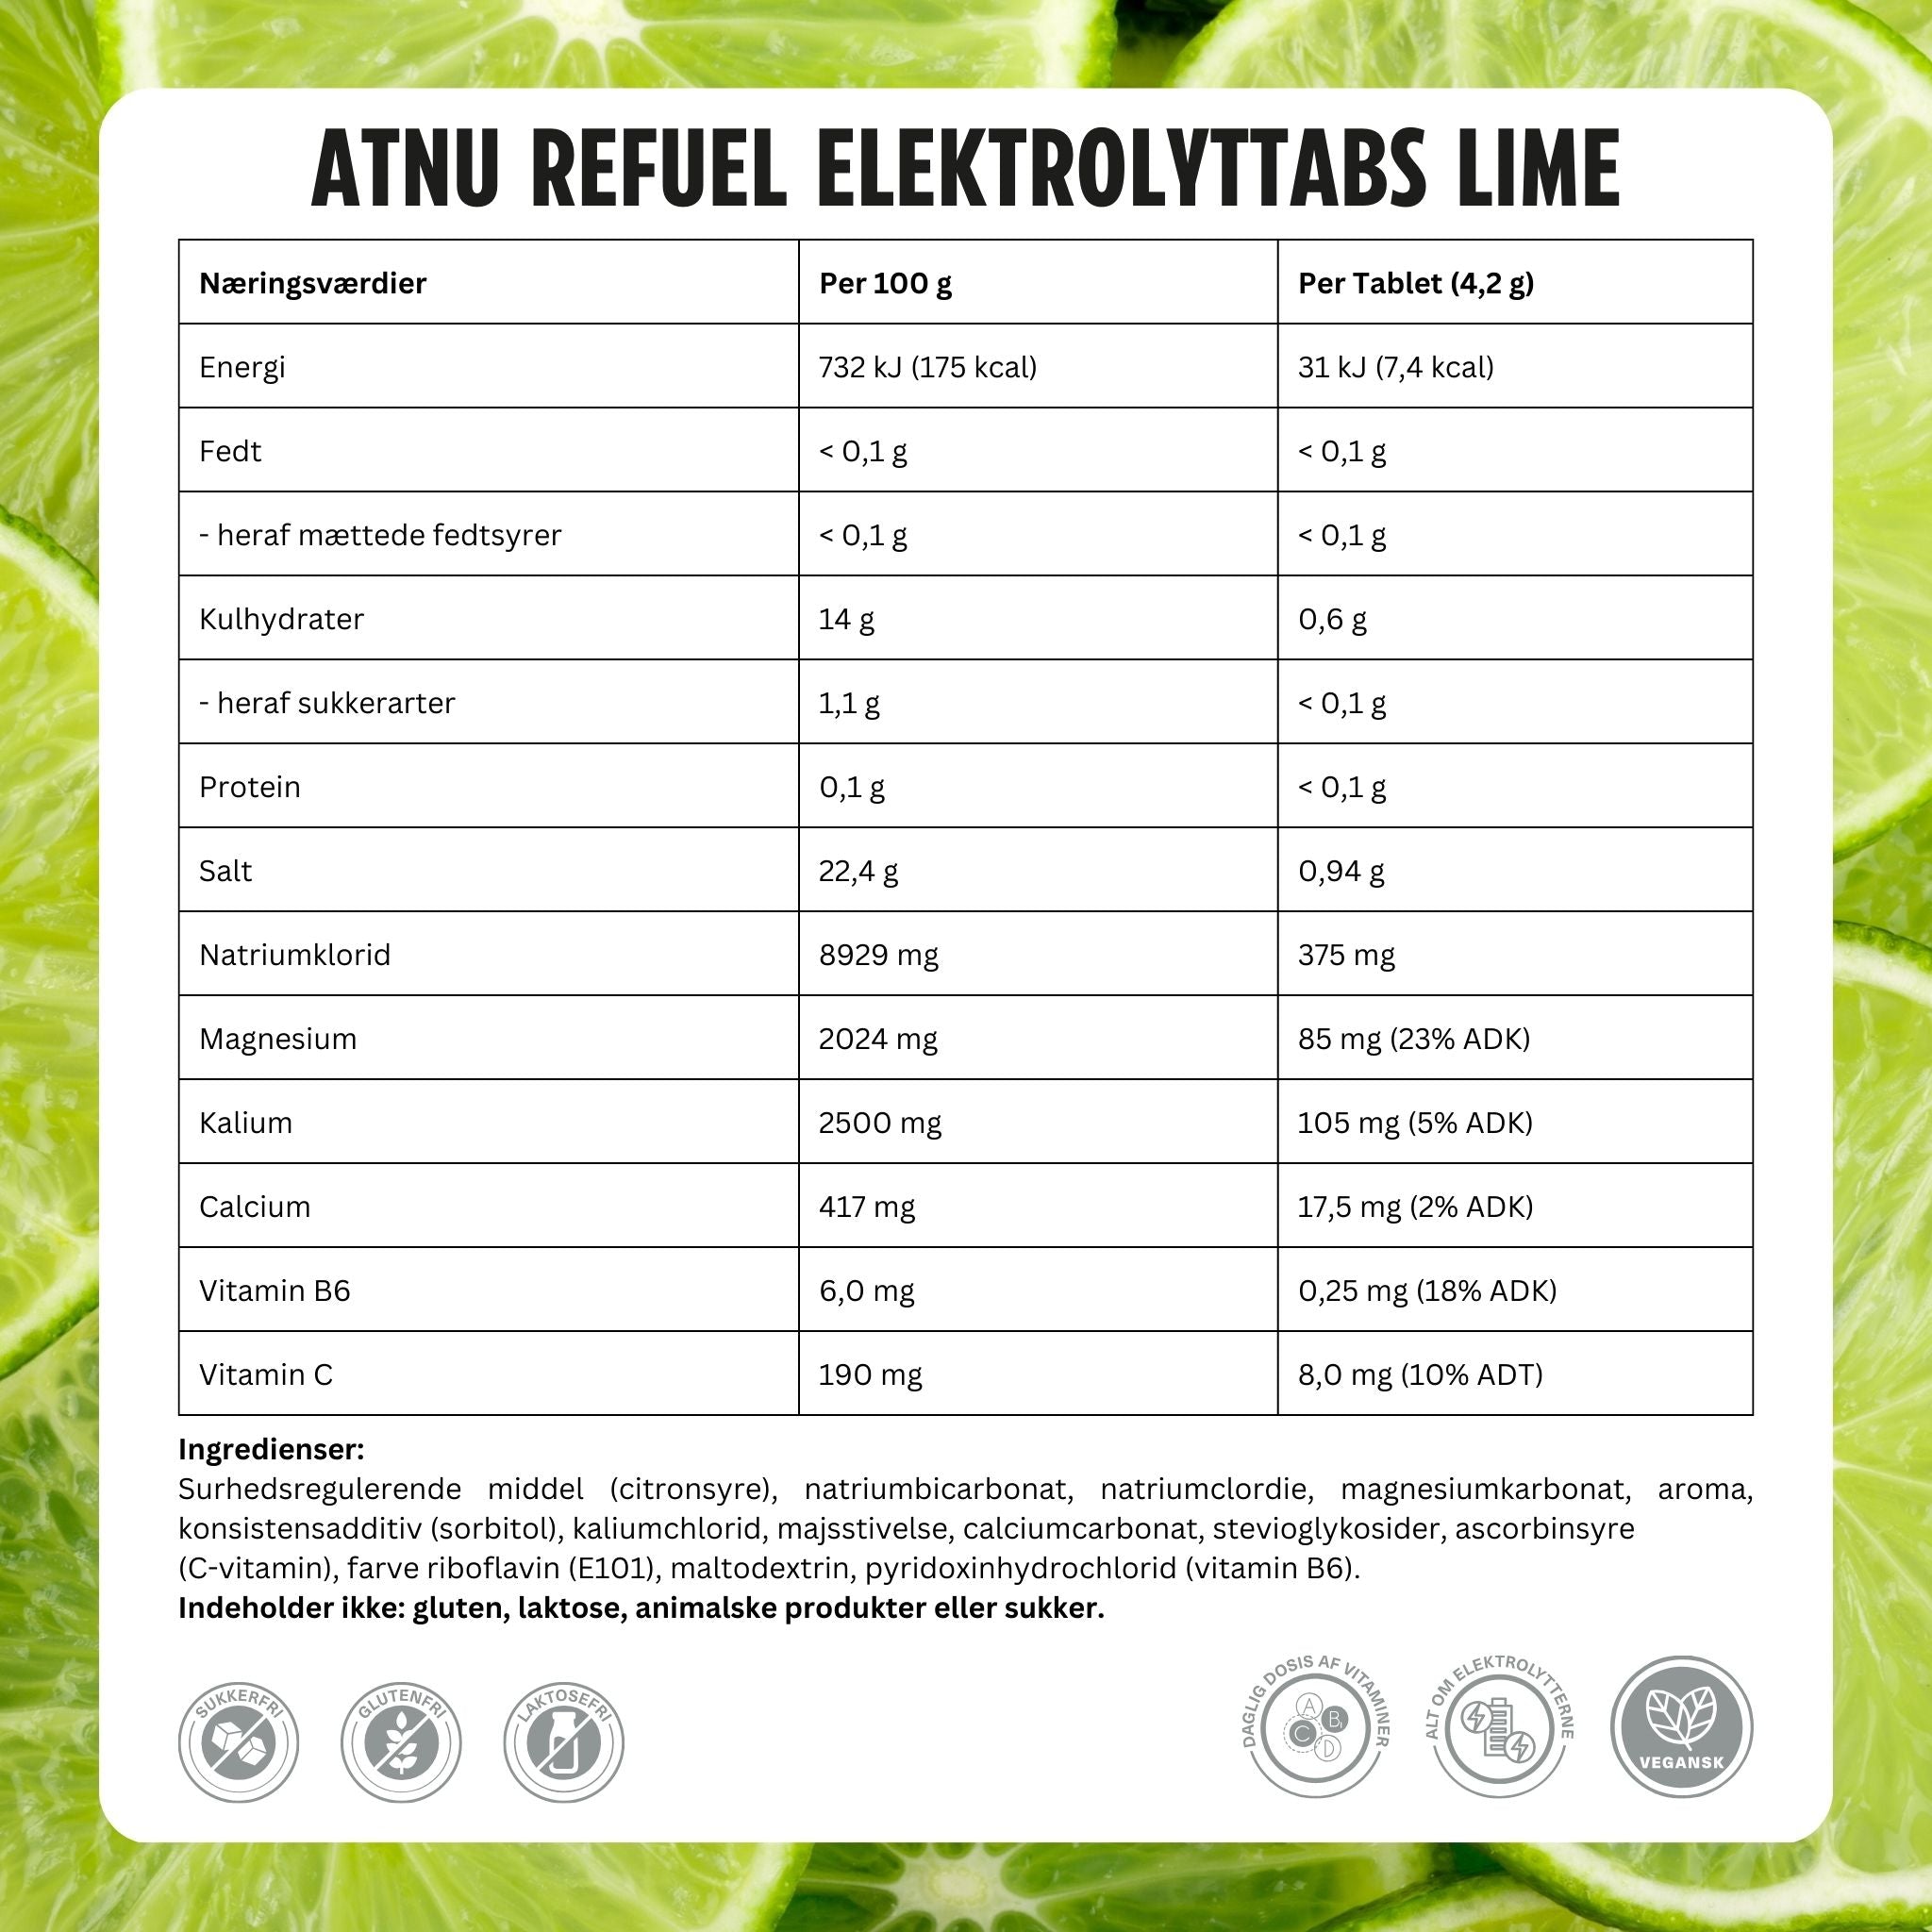 ATNU Refuel Elektrolyttabs Lime (20 tabs)